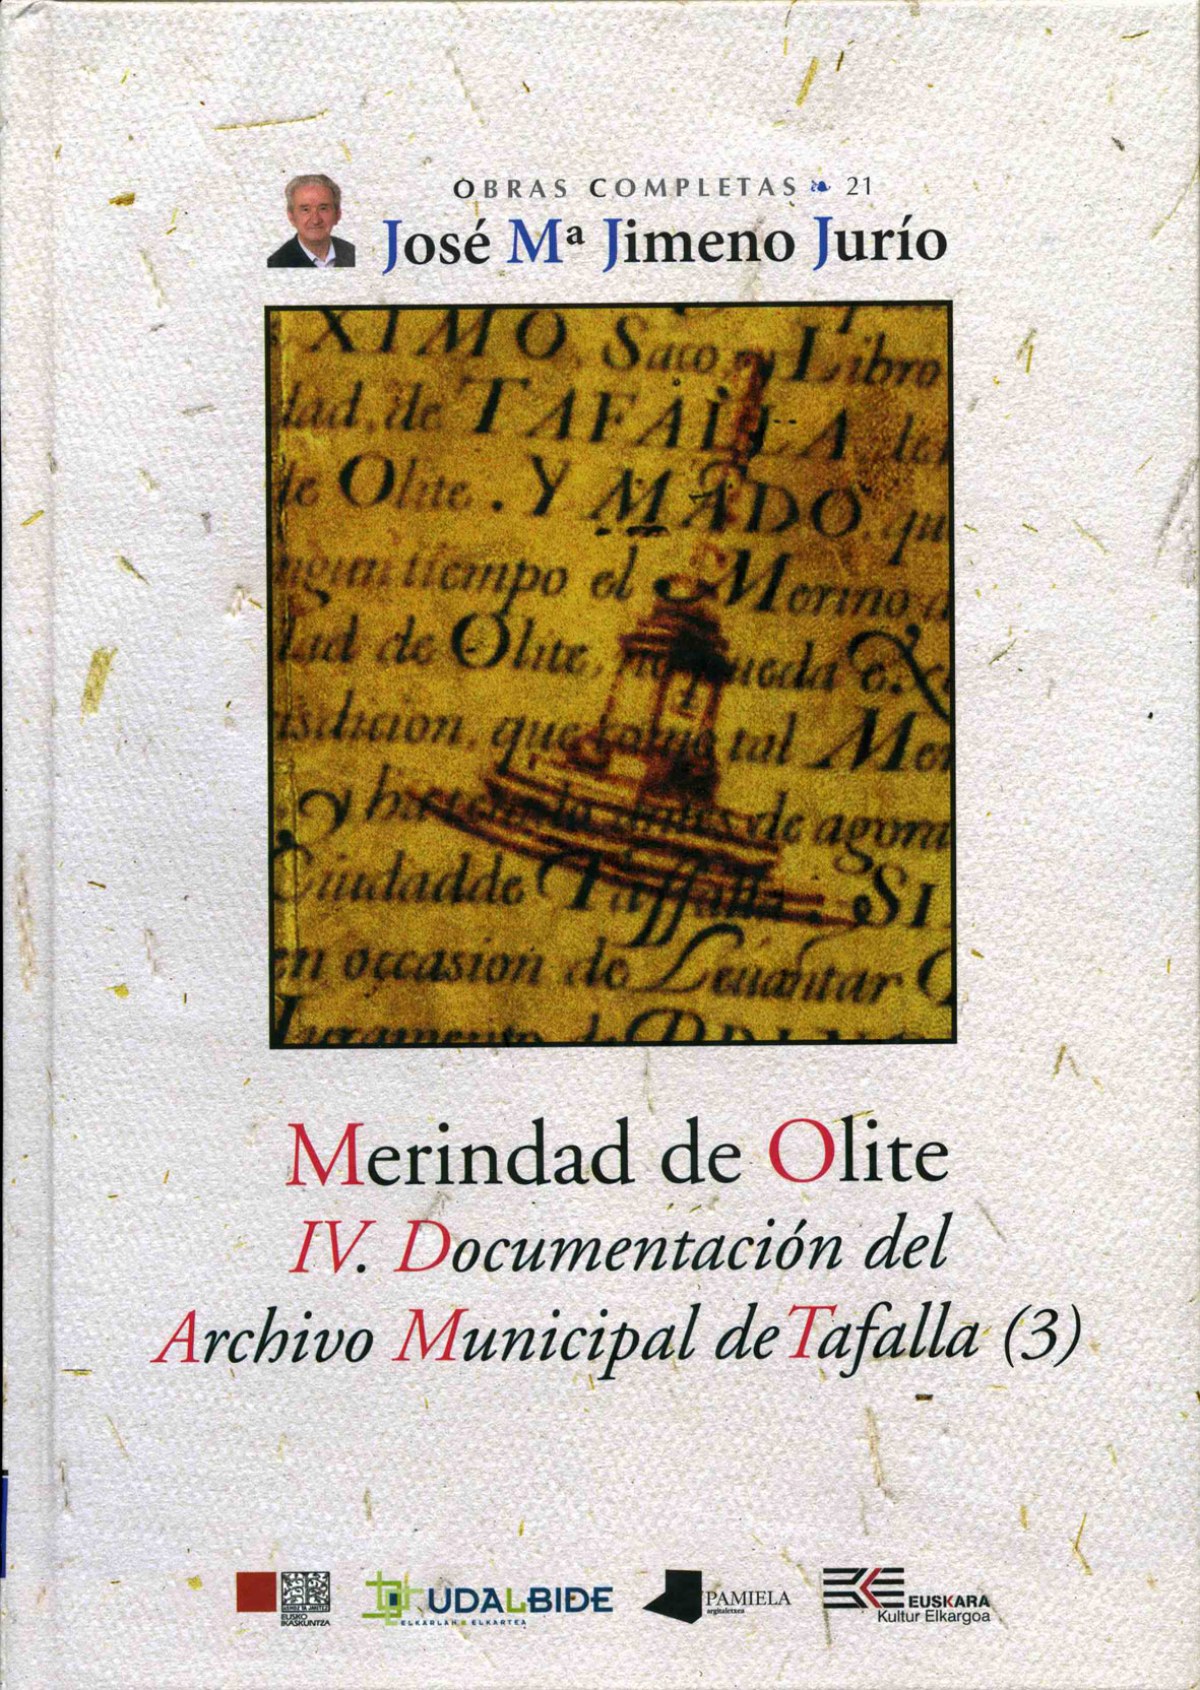 MERINDAD DE OLITE. IV. DOCUMENTACION DEL A.M.T.(3) Libro de Actos y Ordenanzas de la villa de Tafalla. Segunda parte (1501-1509) - Jimeno Jurio, Jose Maria